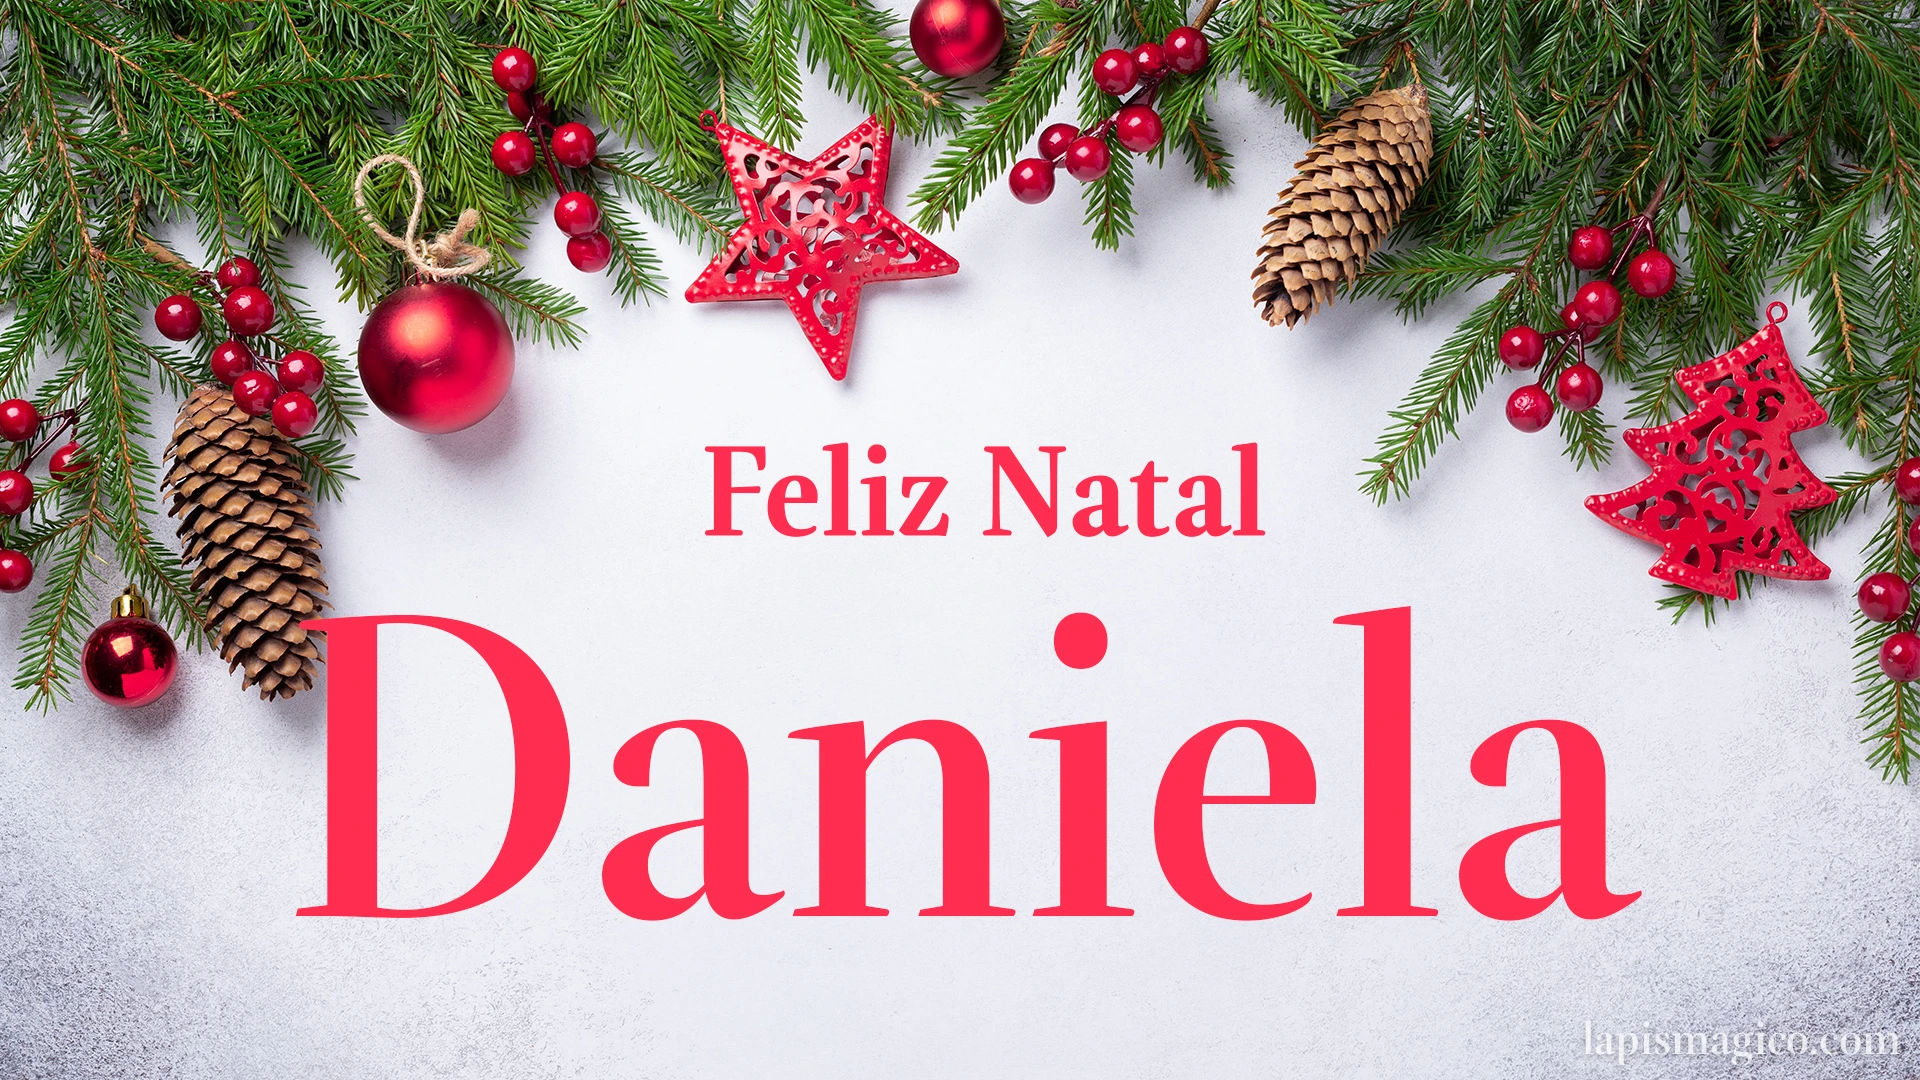 Oh Daniela, cinco postais de Feliz Natal Postal com o teu nome